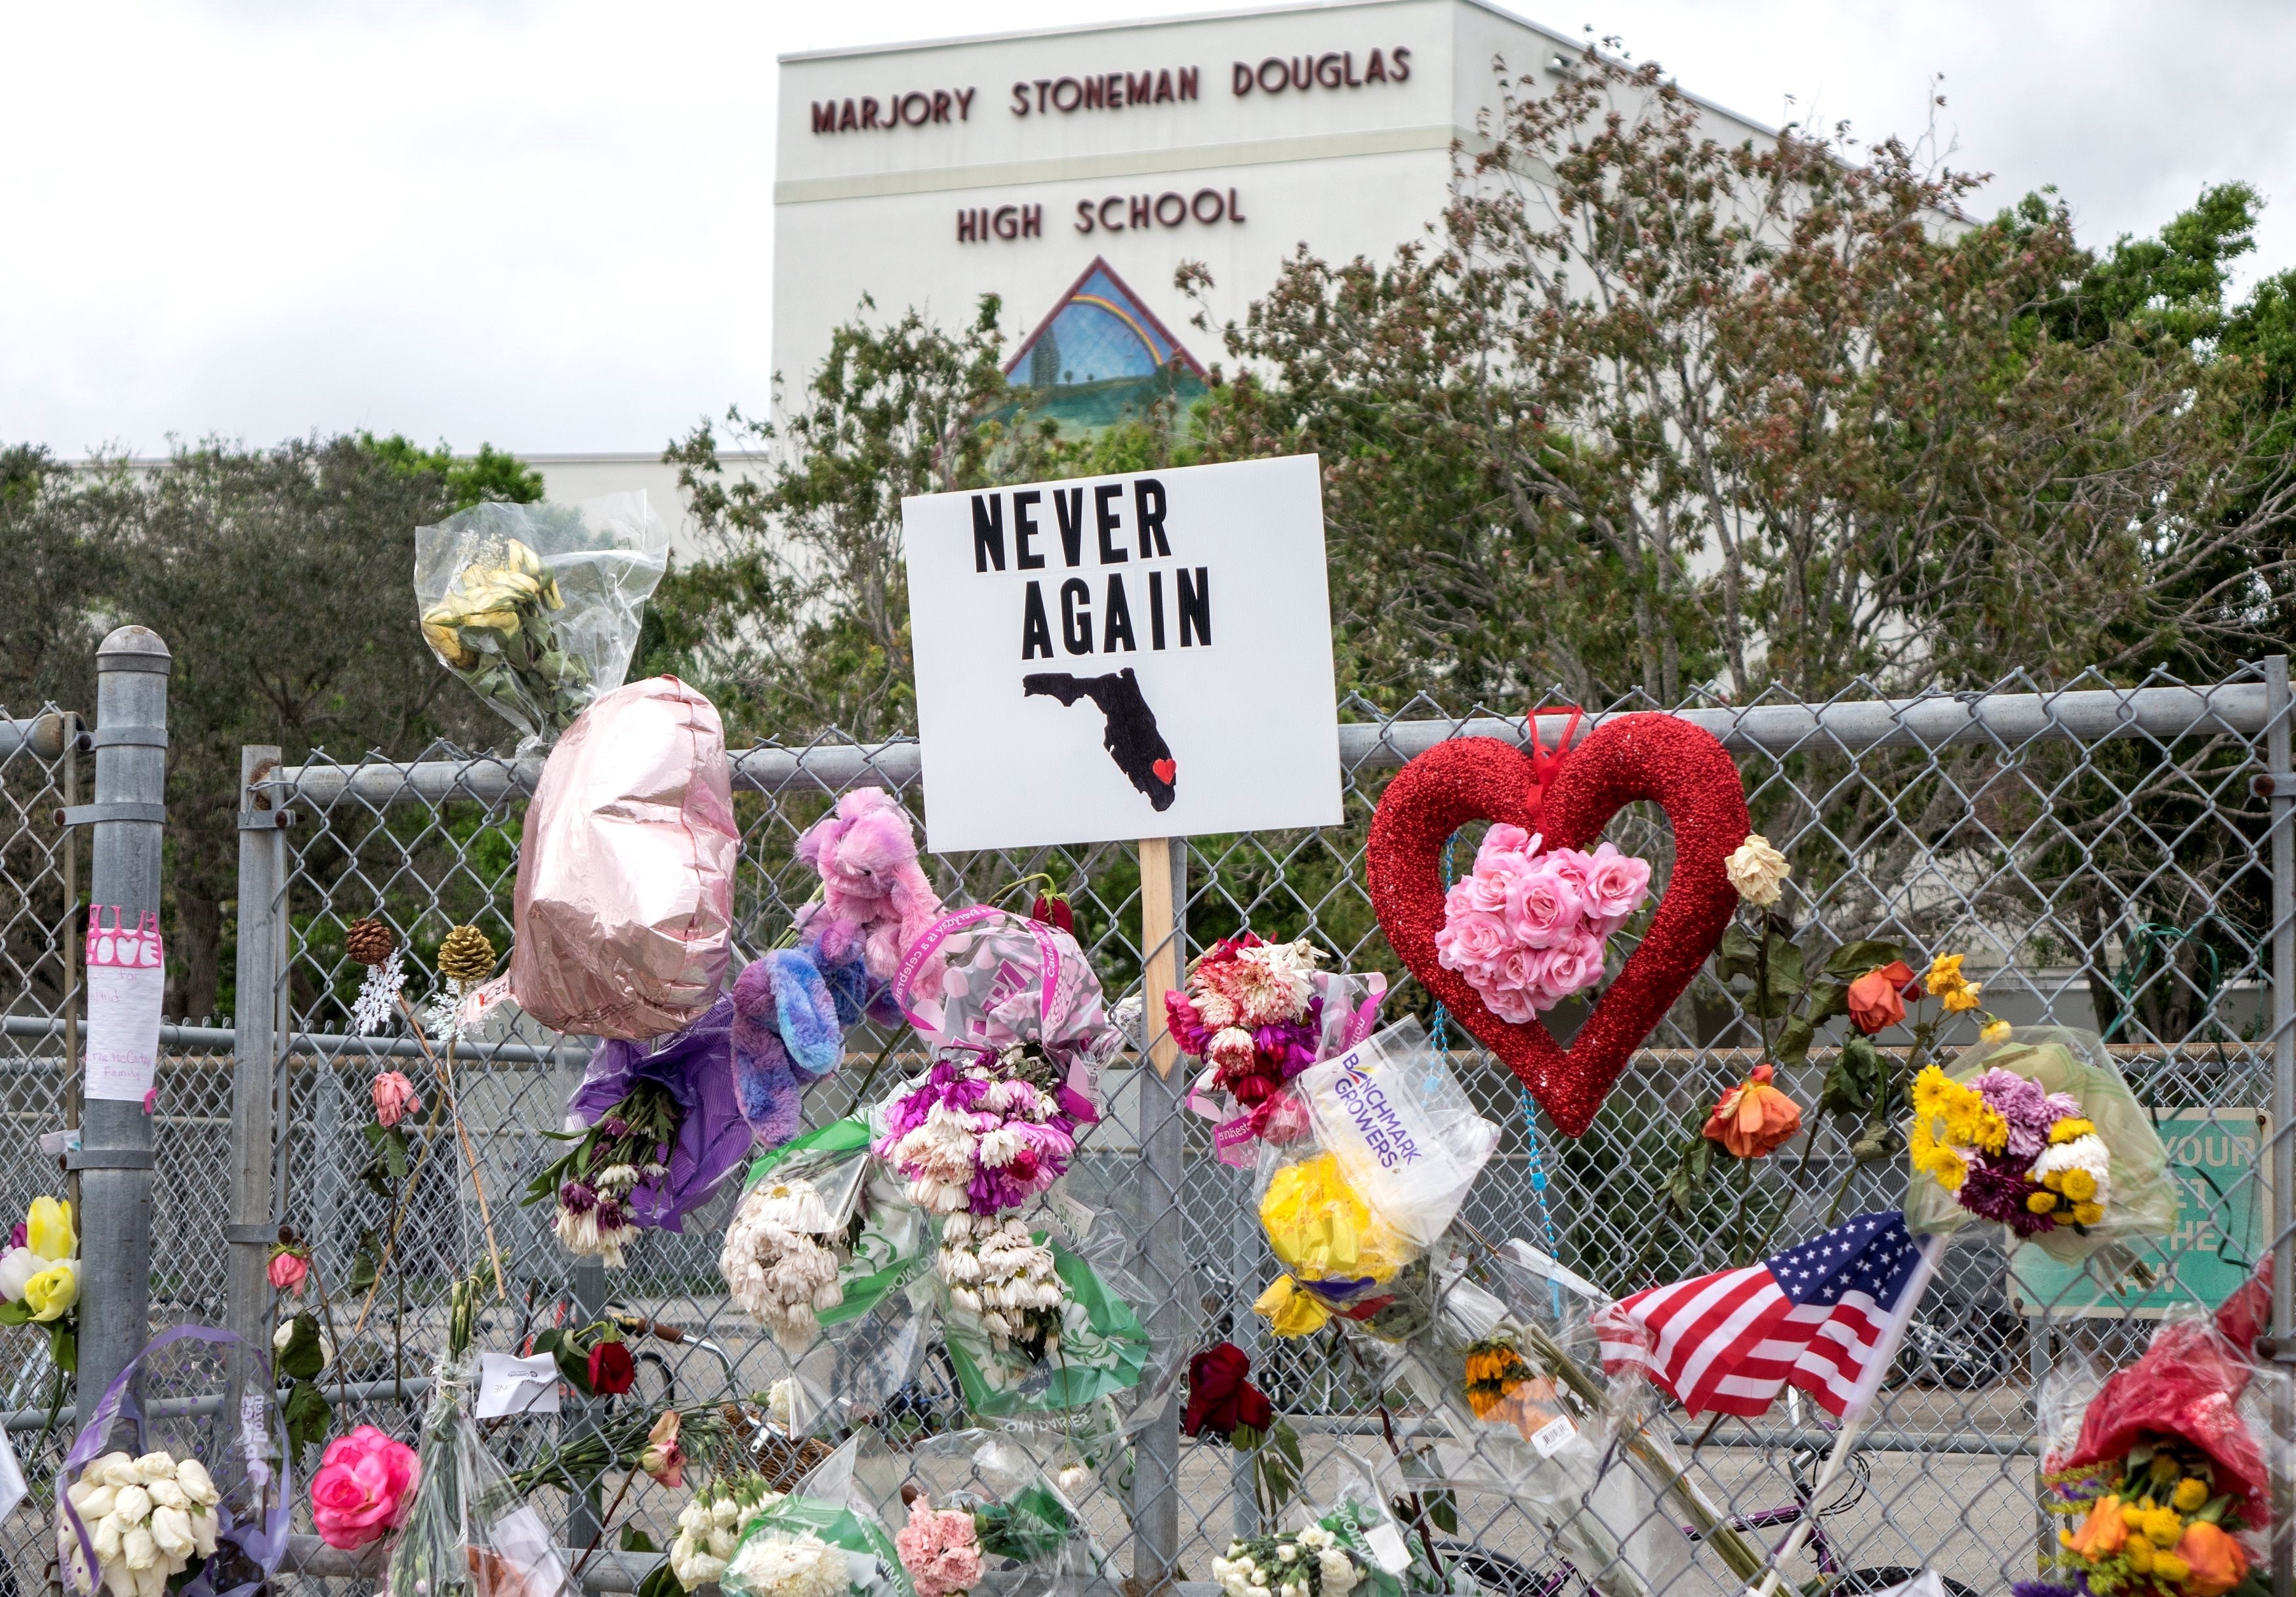 Memorial de las víctimas de la masacre en Florida (EFE)
